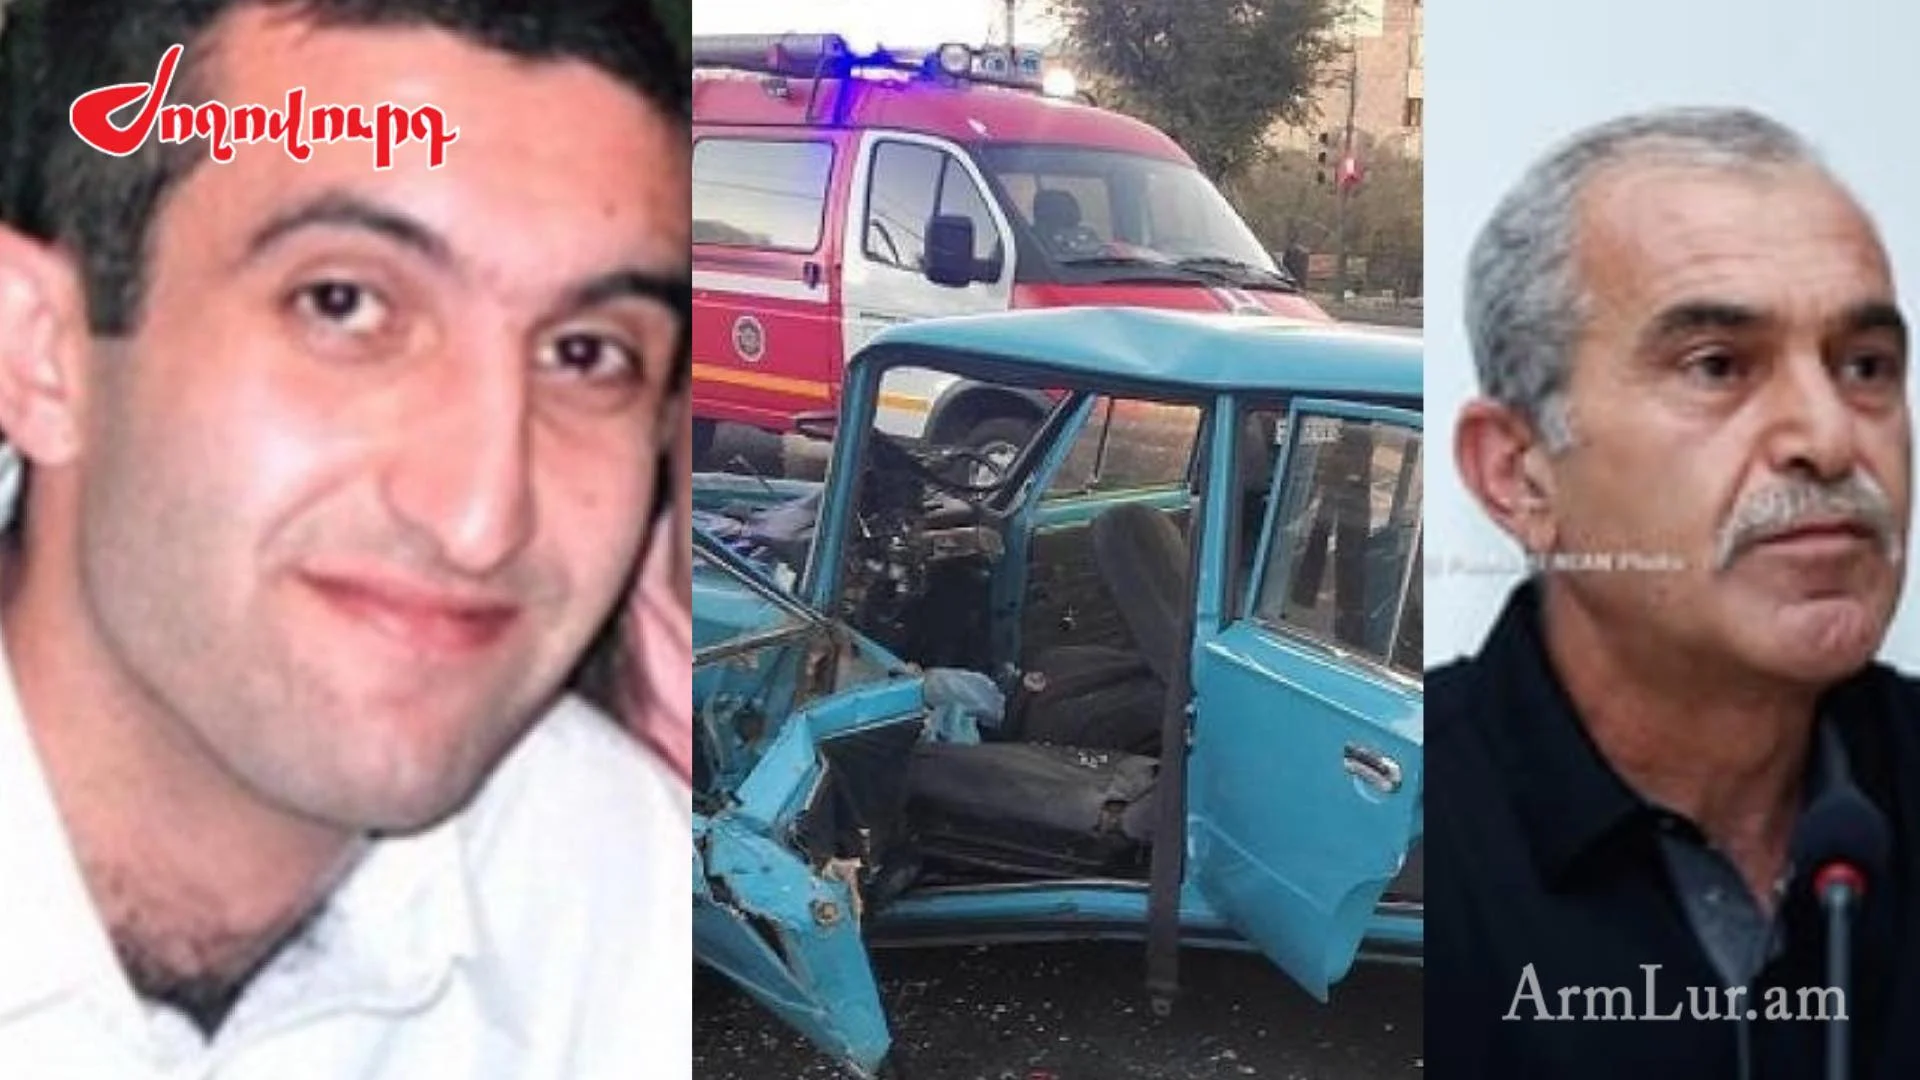 Այսօր Երևանում վթարից մահացած վարորդը «Հարսնաքար»-ում ծեծի ենթարկված Վահե Ավետյանի հայրն էր